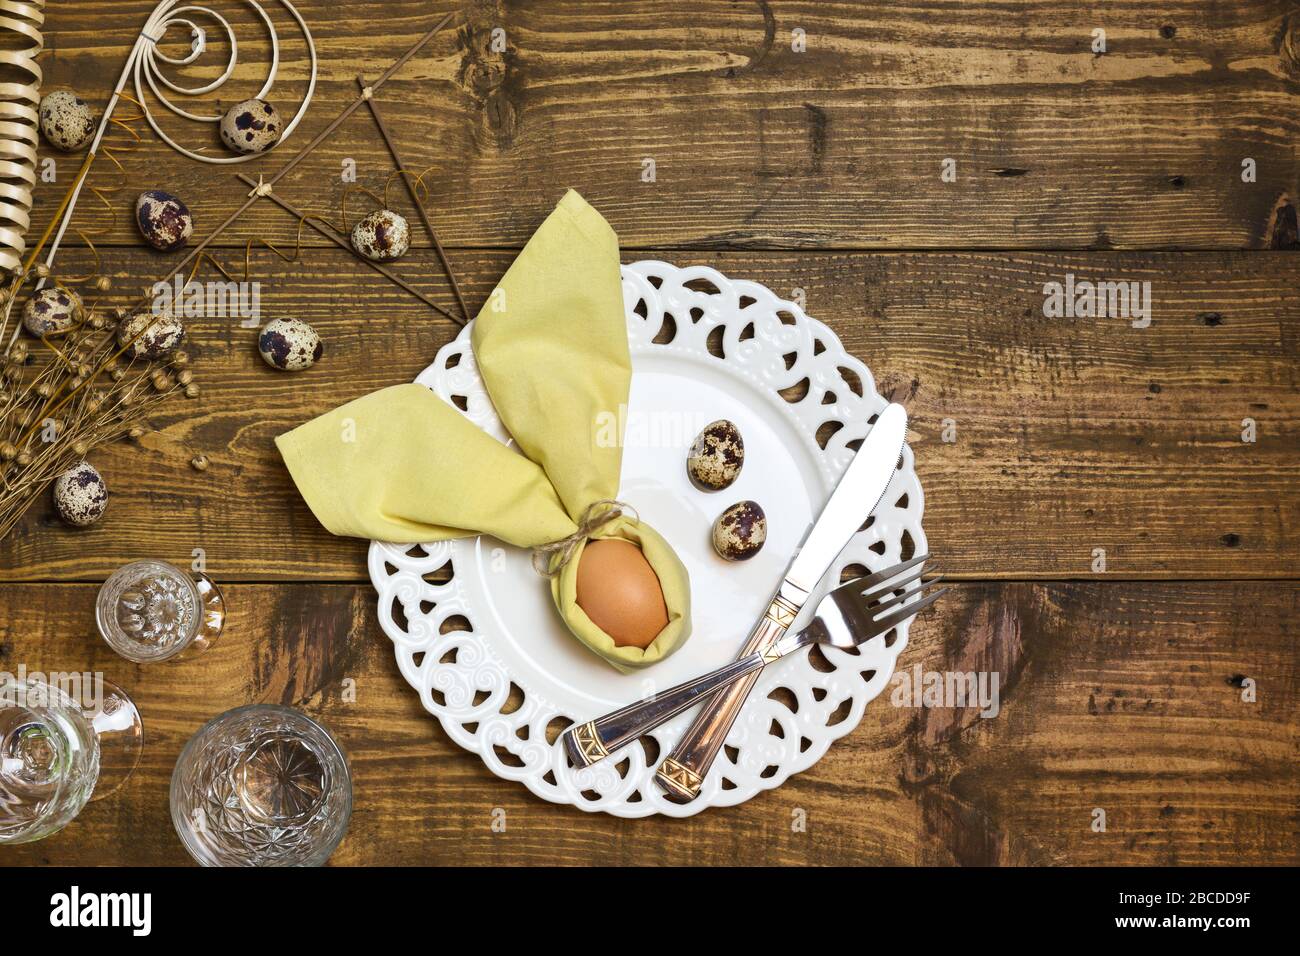 Table de Pâques festive avec œufs en serviette comme le lapin de Pâques et œufs de caille sur fond rustique. Vue de dessus avec espace de copie. Banque D'Images